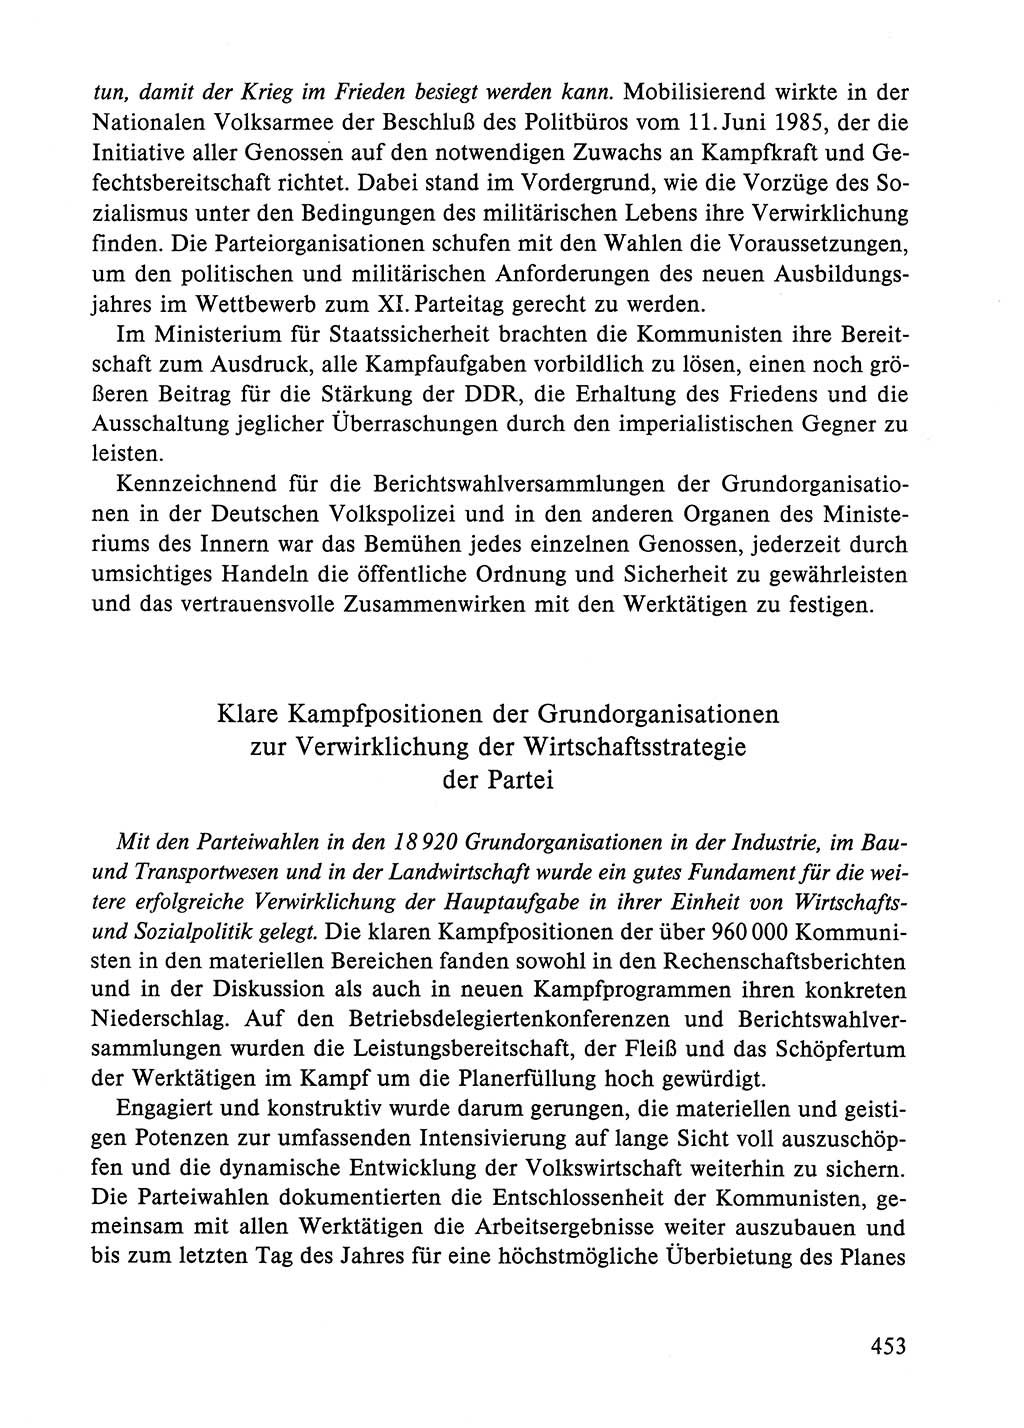 Dokumente der Sozialistischen Einheitspartei Deutschlands (SED) [Deutsche Demokratische Republik (DDR)] 1984-1985, Seite 453 (Dok. SED DDR 1984-1985, S. 453)